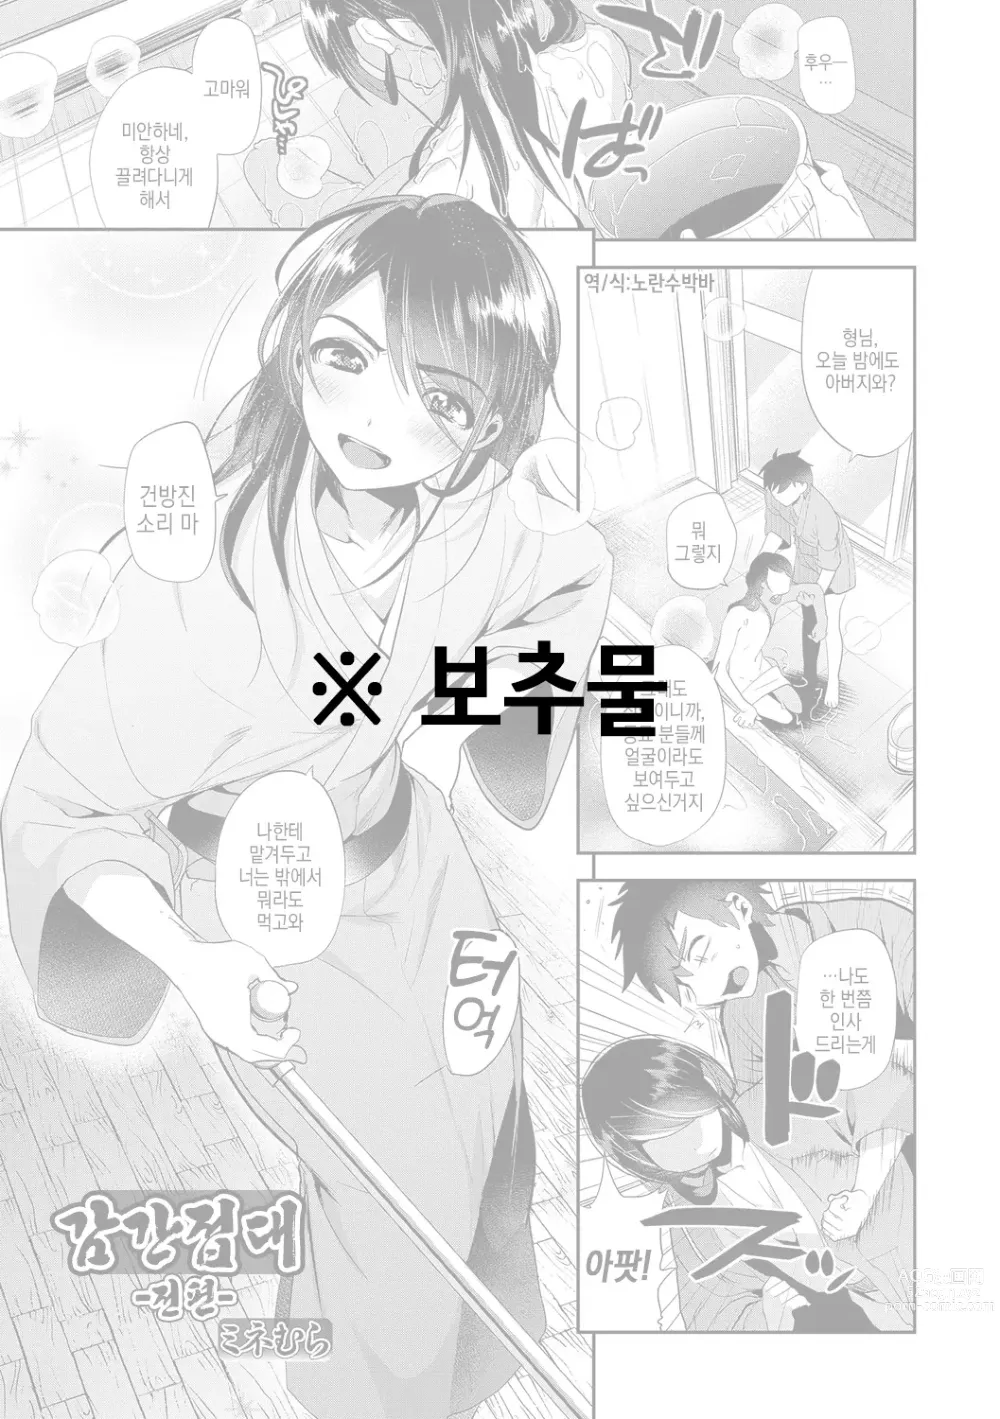 Page 1 of manga 감간접대 -전편-